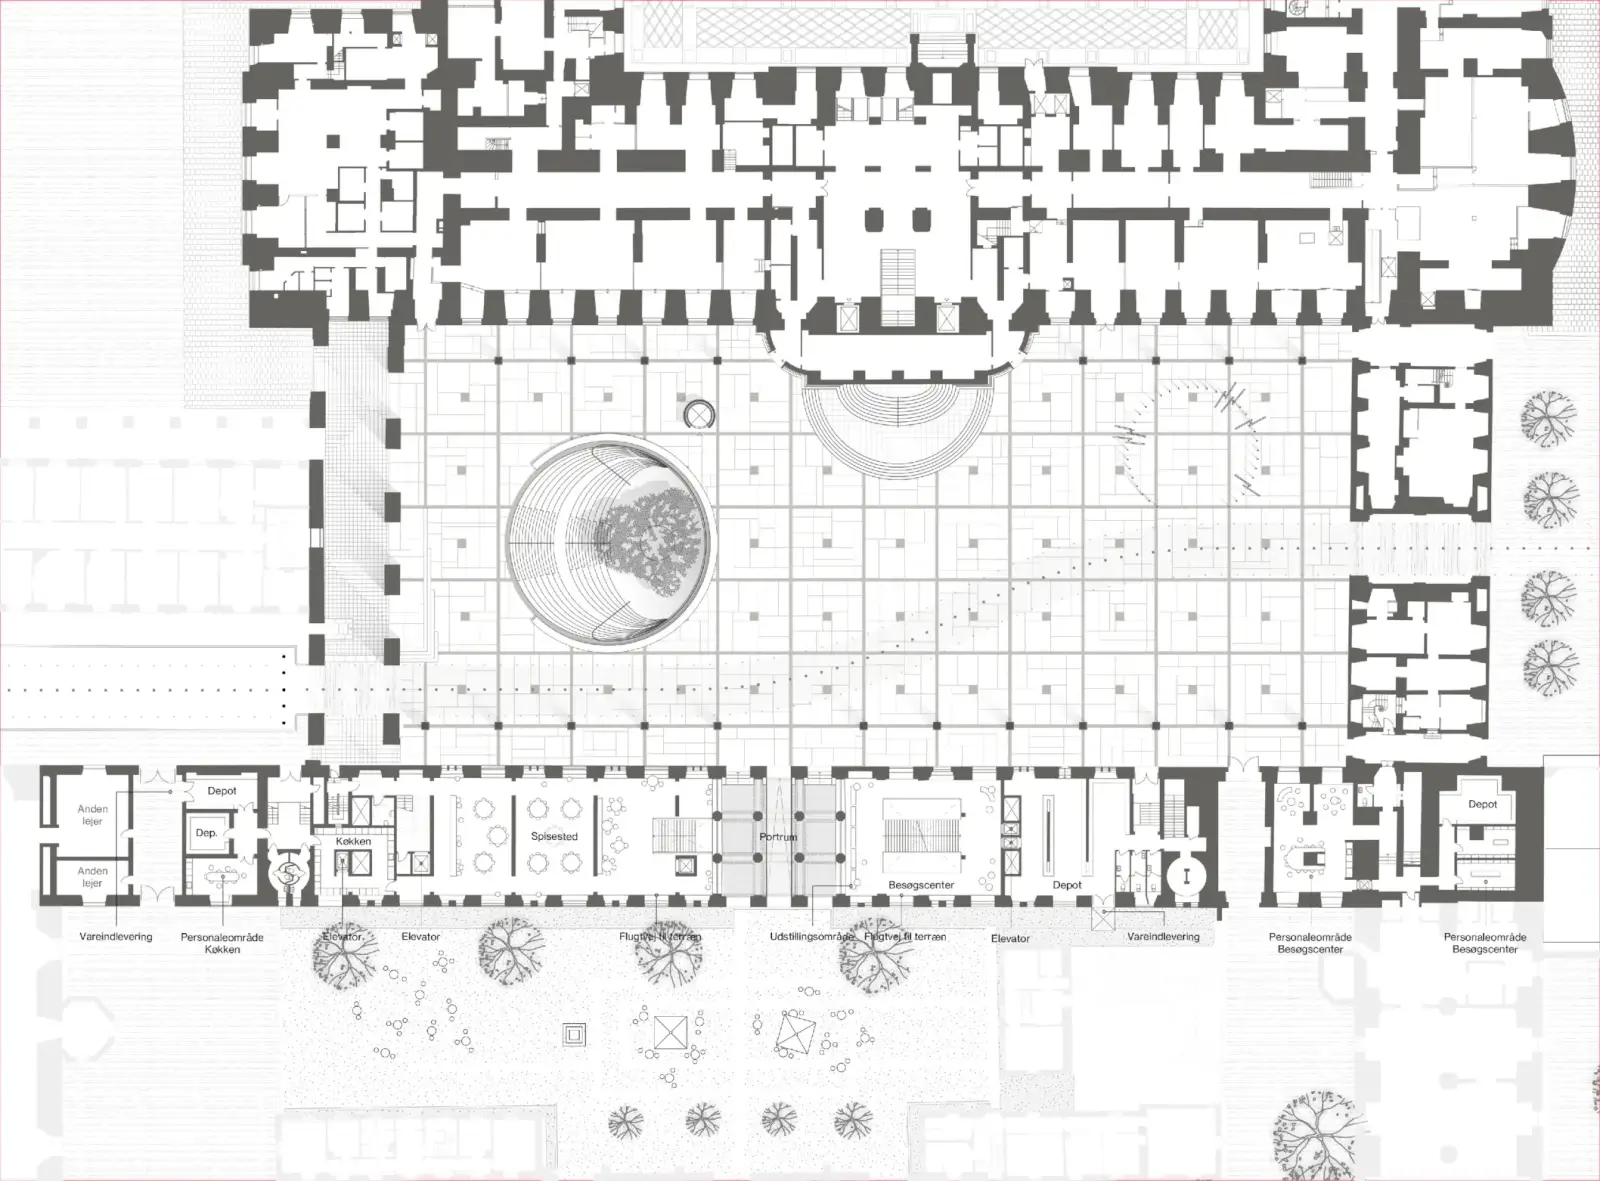 地面層平面圖：顯示議會庭院由克里斯蒂安堡宮現有建築和前國家檔案館建築構成，新入口通往下方空間